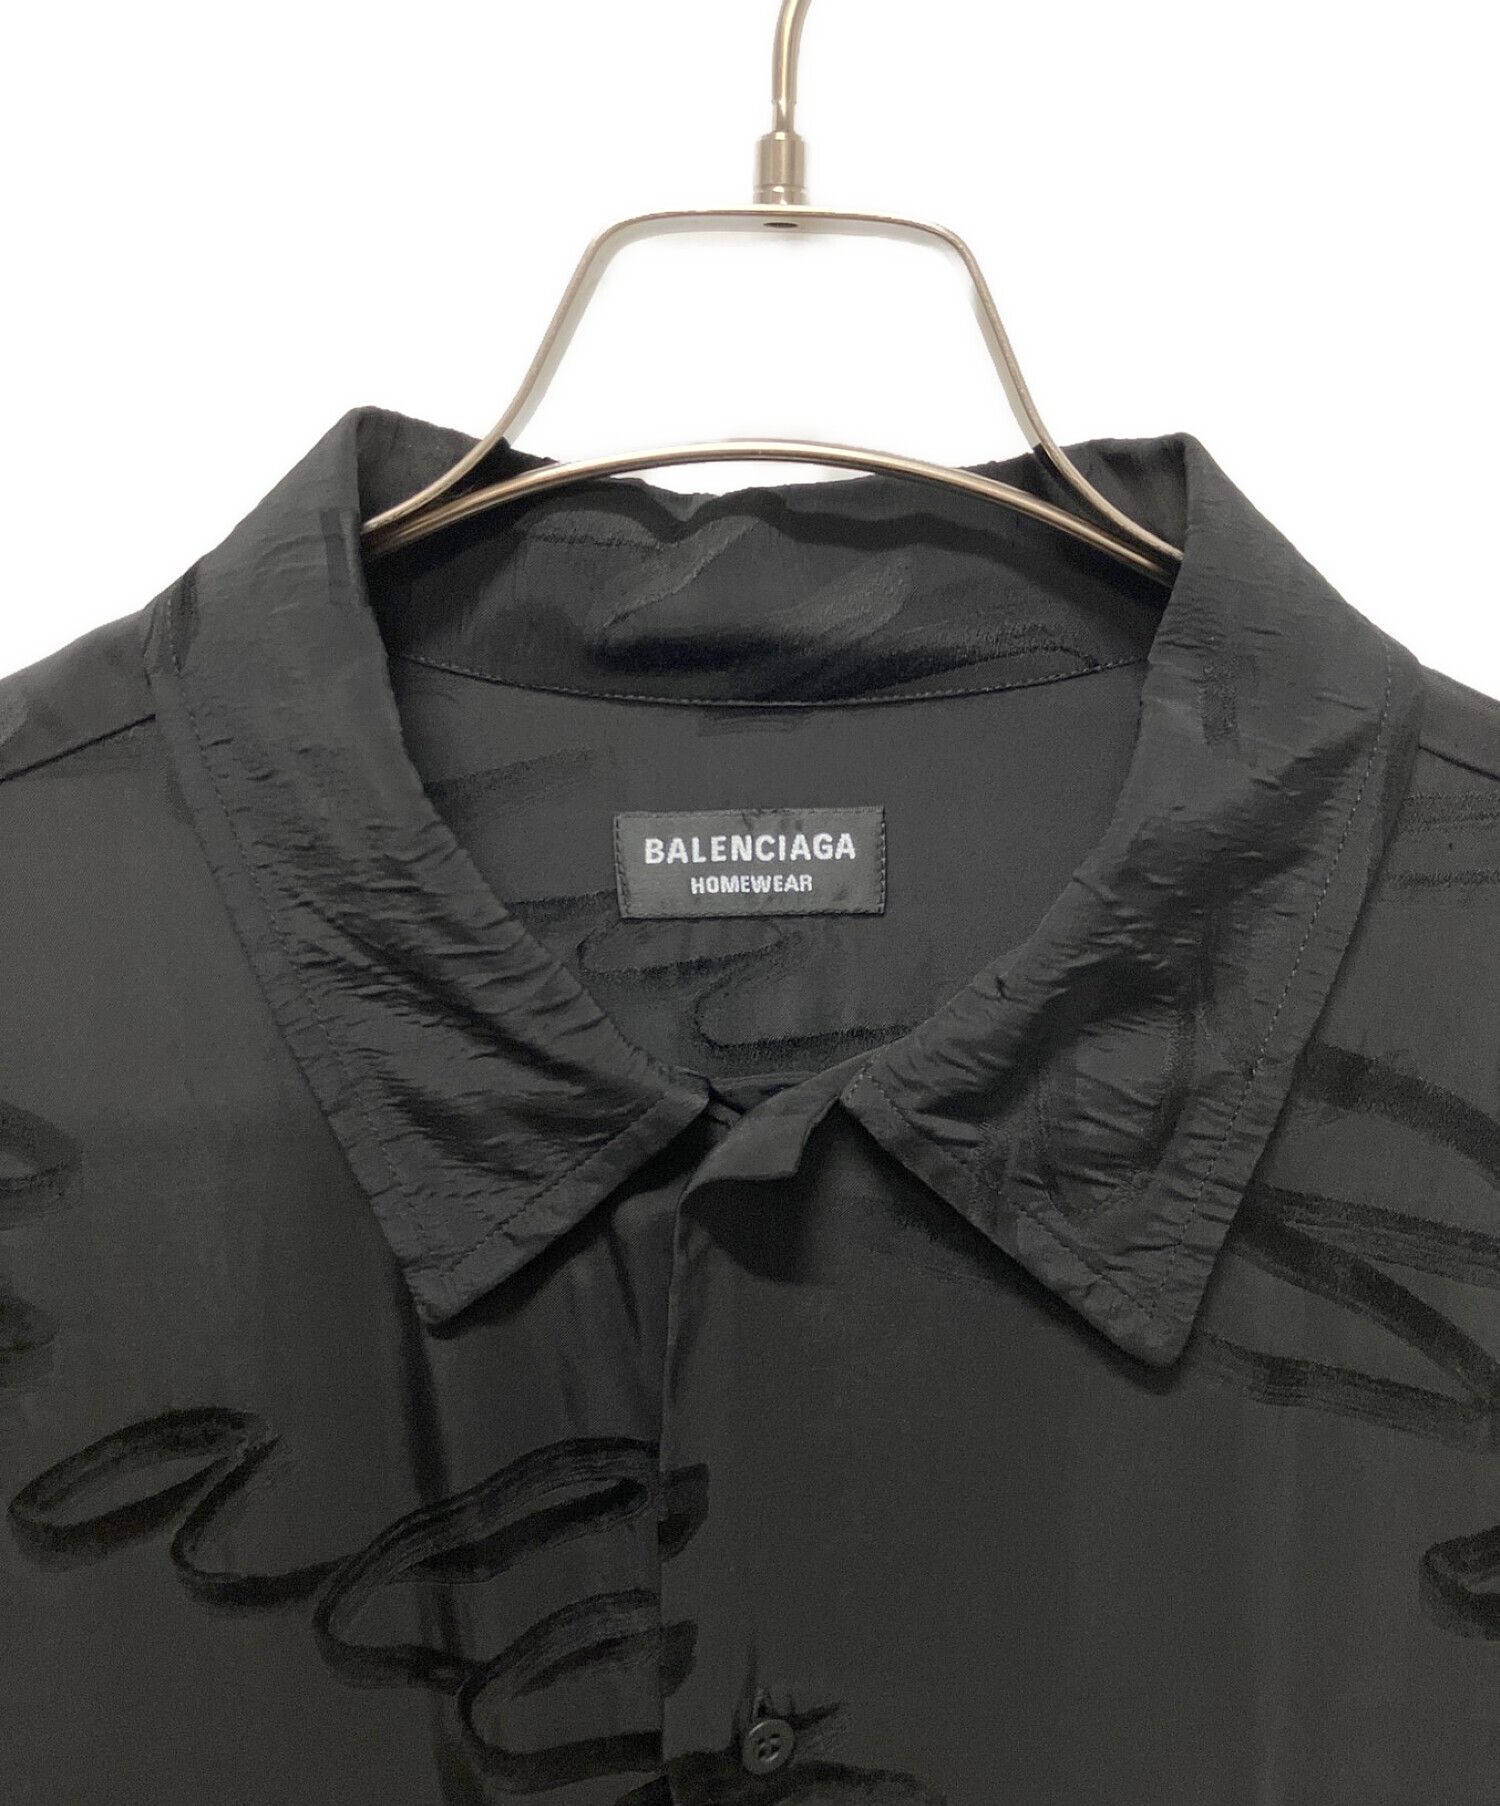 BALENCIAGA (バレンシアガ) ロゴワイド半袖シャツ ブラック サイズ:38